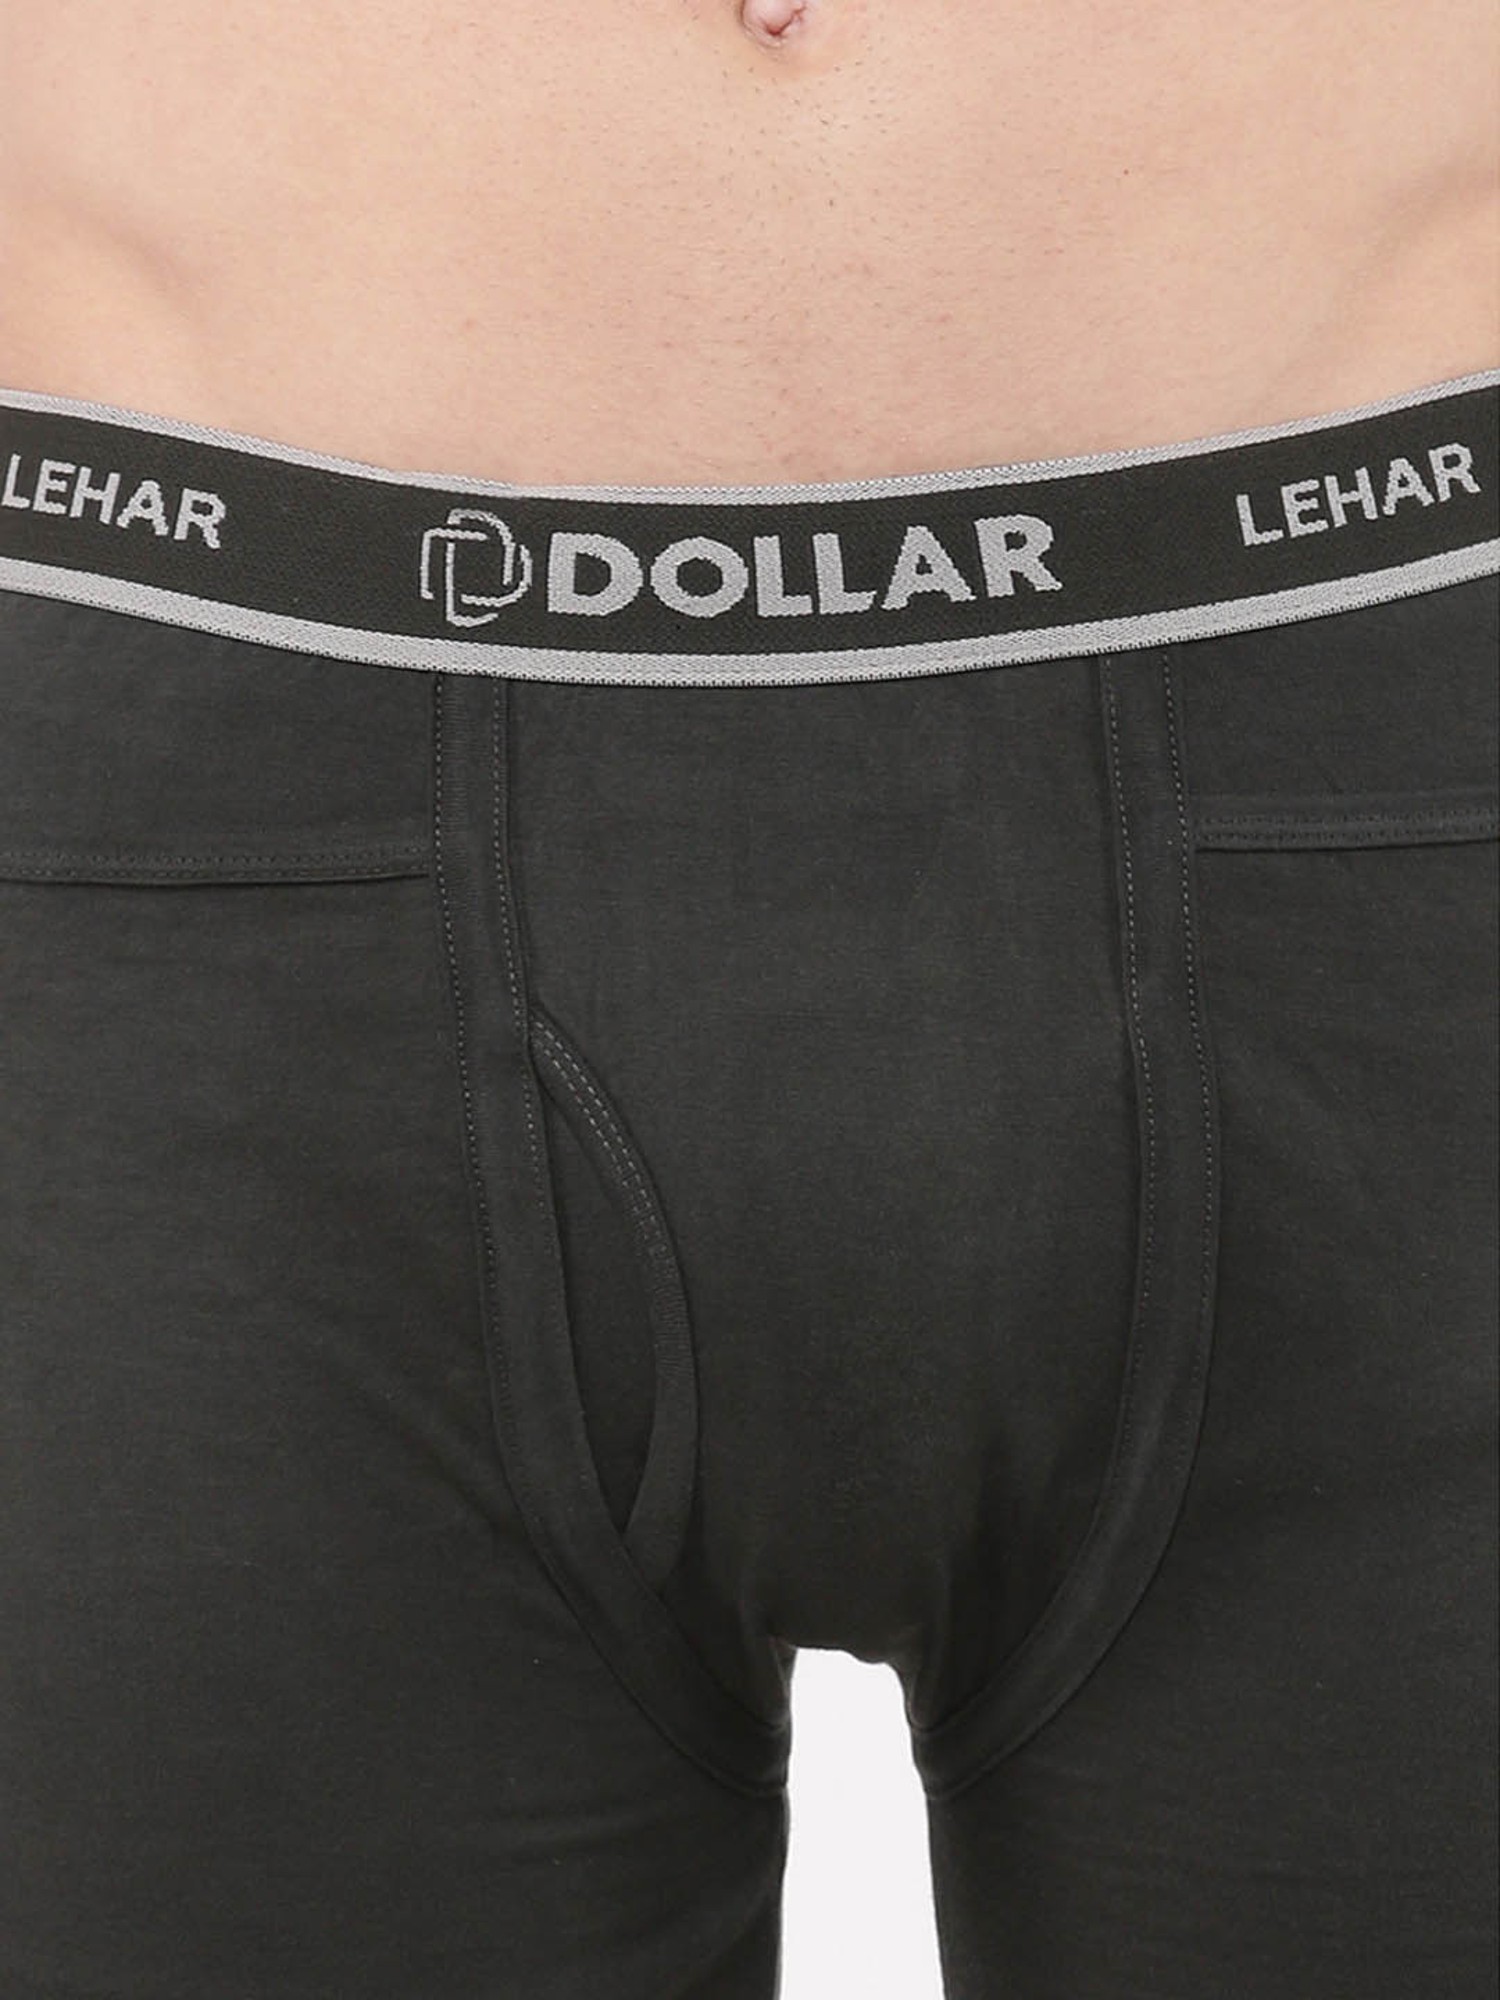 Buy Dollar Lehar Multicolor Solid Fine Pocket Trunks (Pack of 5) for Men  Online @ Tata CLiQ